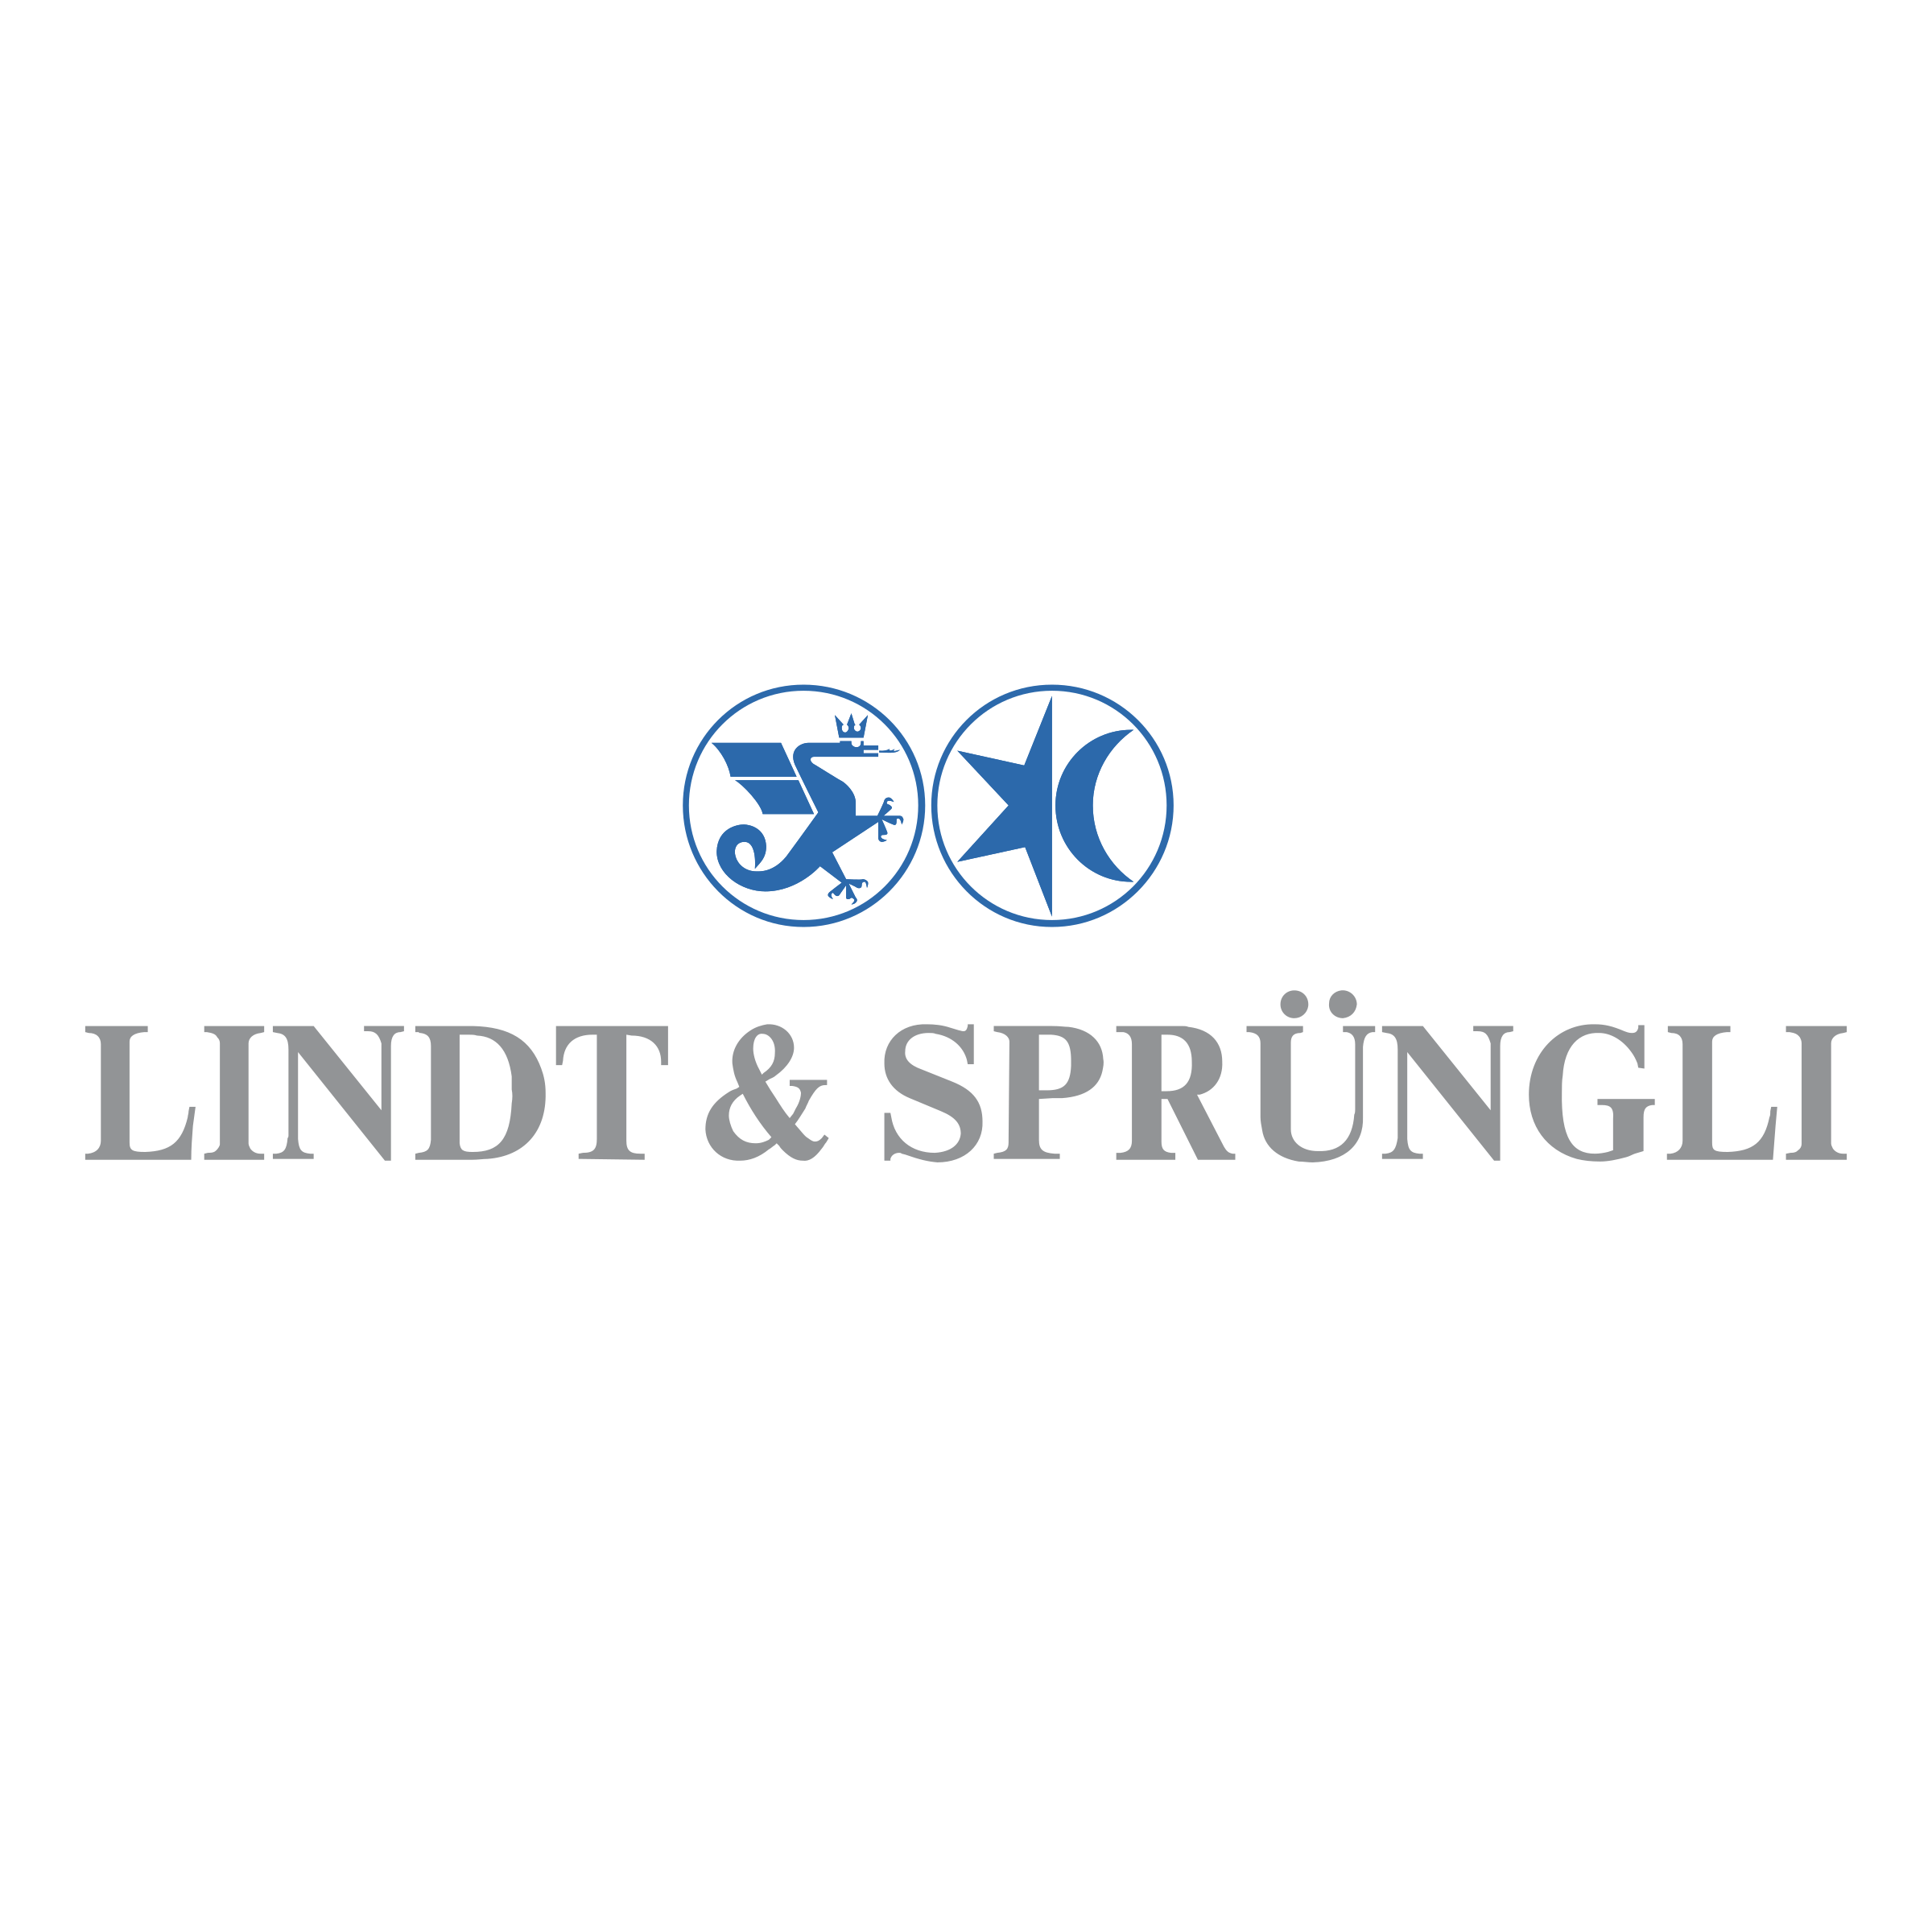 Lindt Logo - Lindt & Sprungli Logo PNG Transparent & SVG Vector